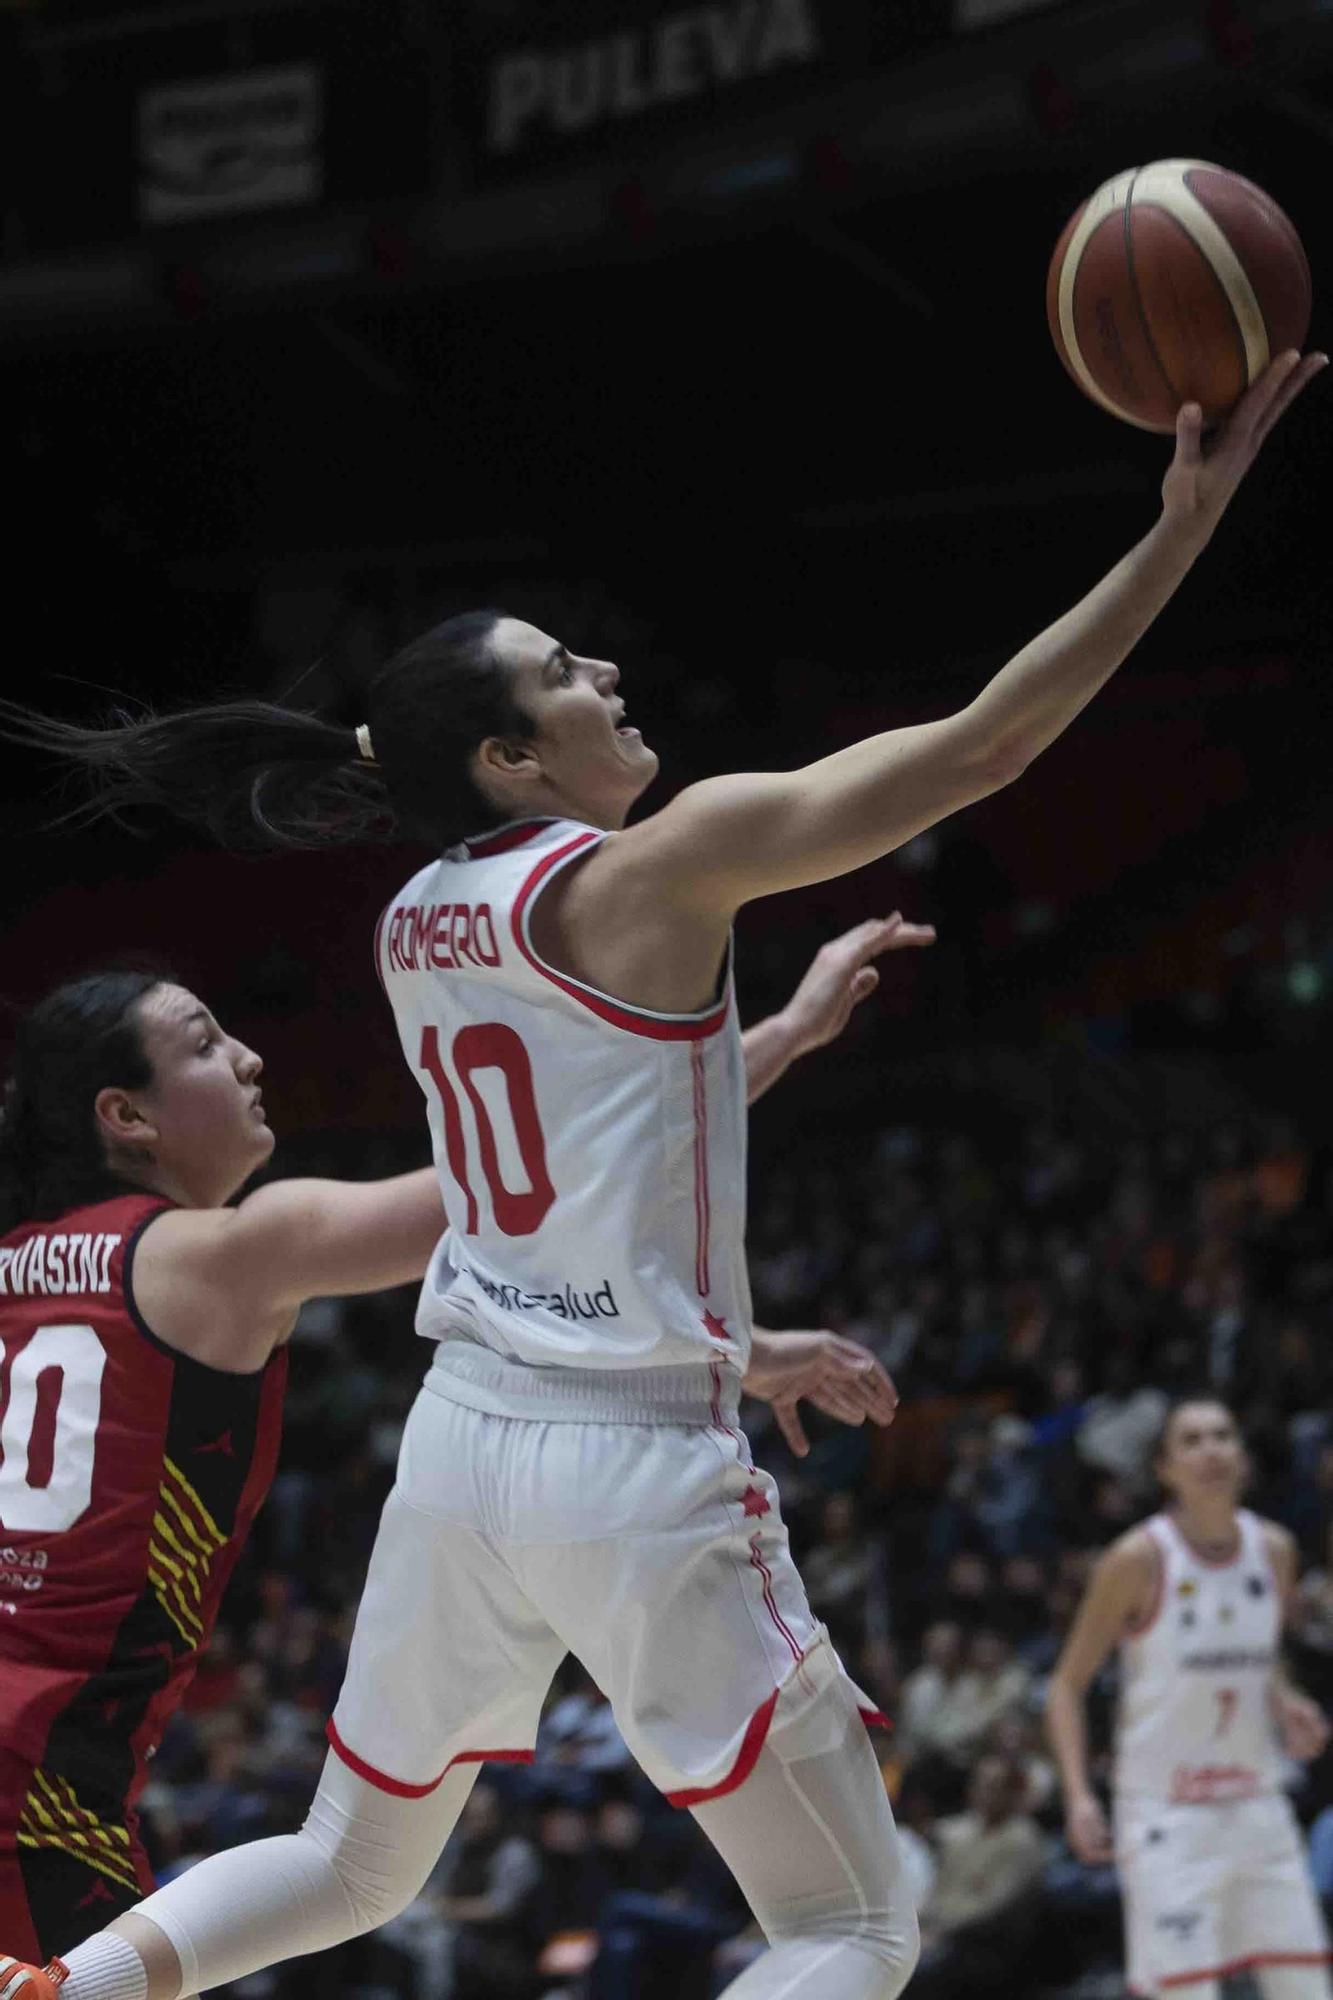 Valencia Basket - Casademont Zaragoza de Euroleague Women.